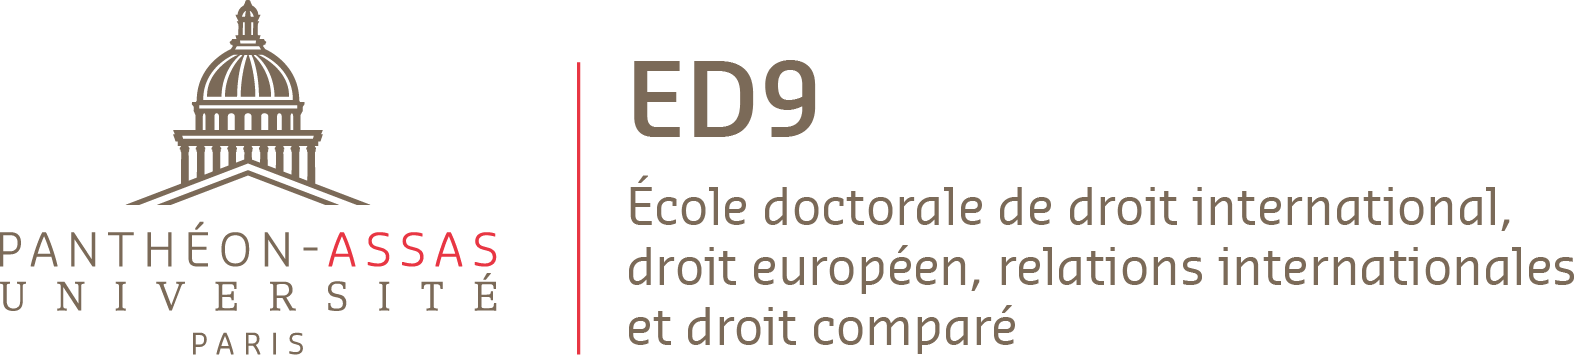 Logo de l'ED 9, Ecole doctorale de droit international, droit européen, relations internationales et droit comparé